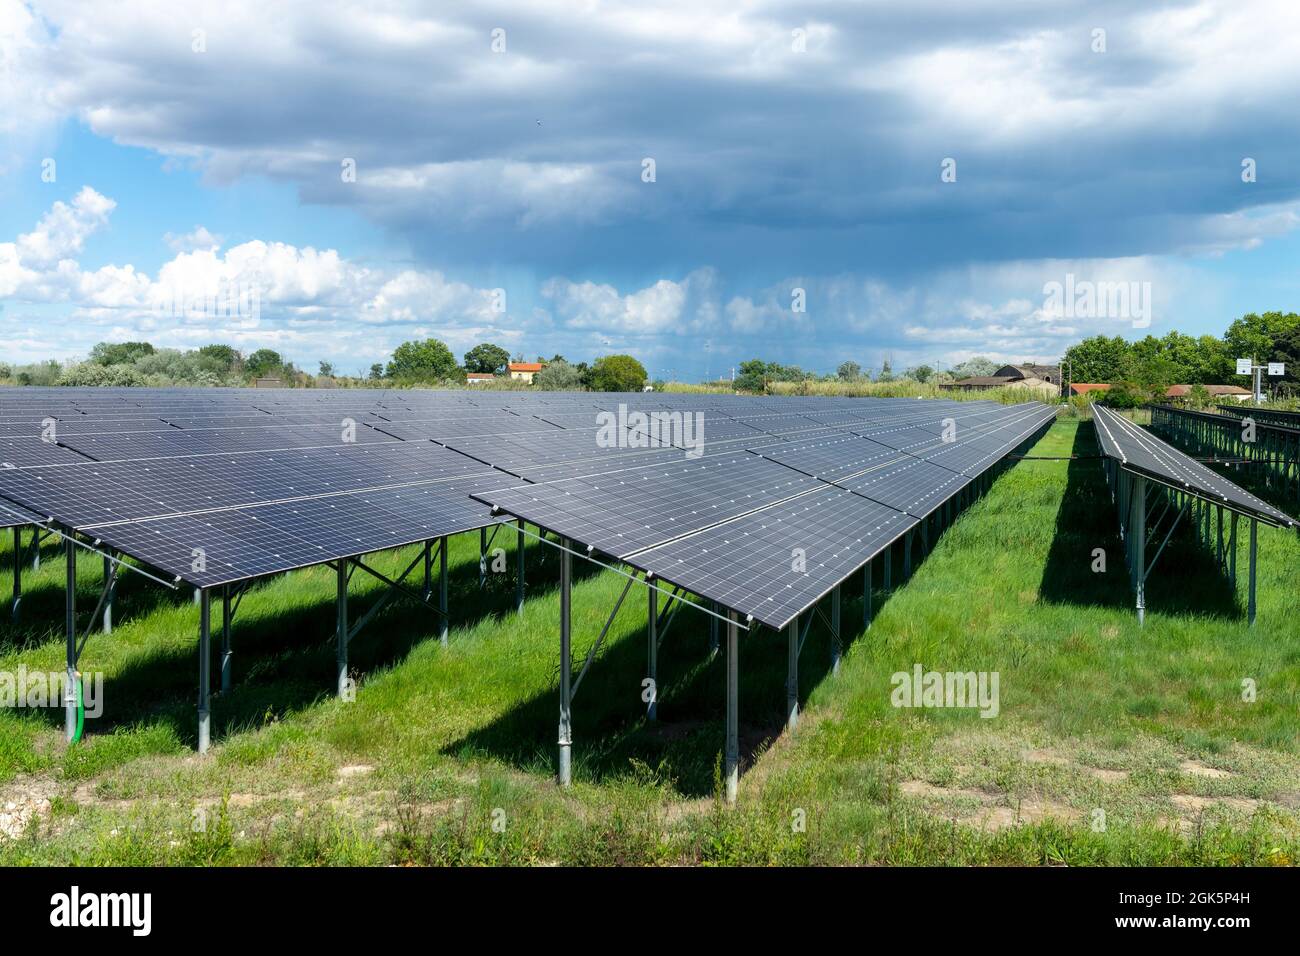 Solarzellen-Farm, Sonnenkollektoren Energiestation, ökologische und erneuerbare Elektrizität Hintergrund Stockfoto